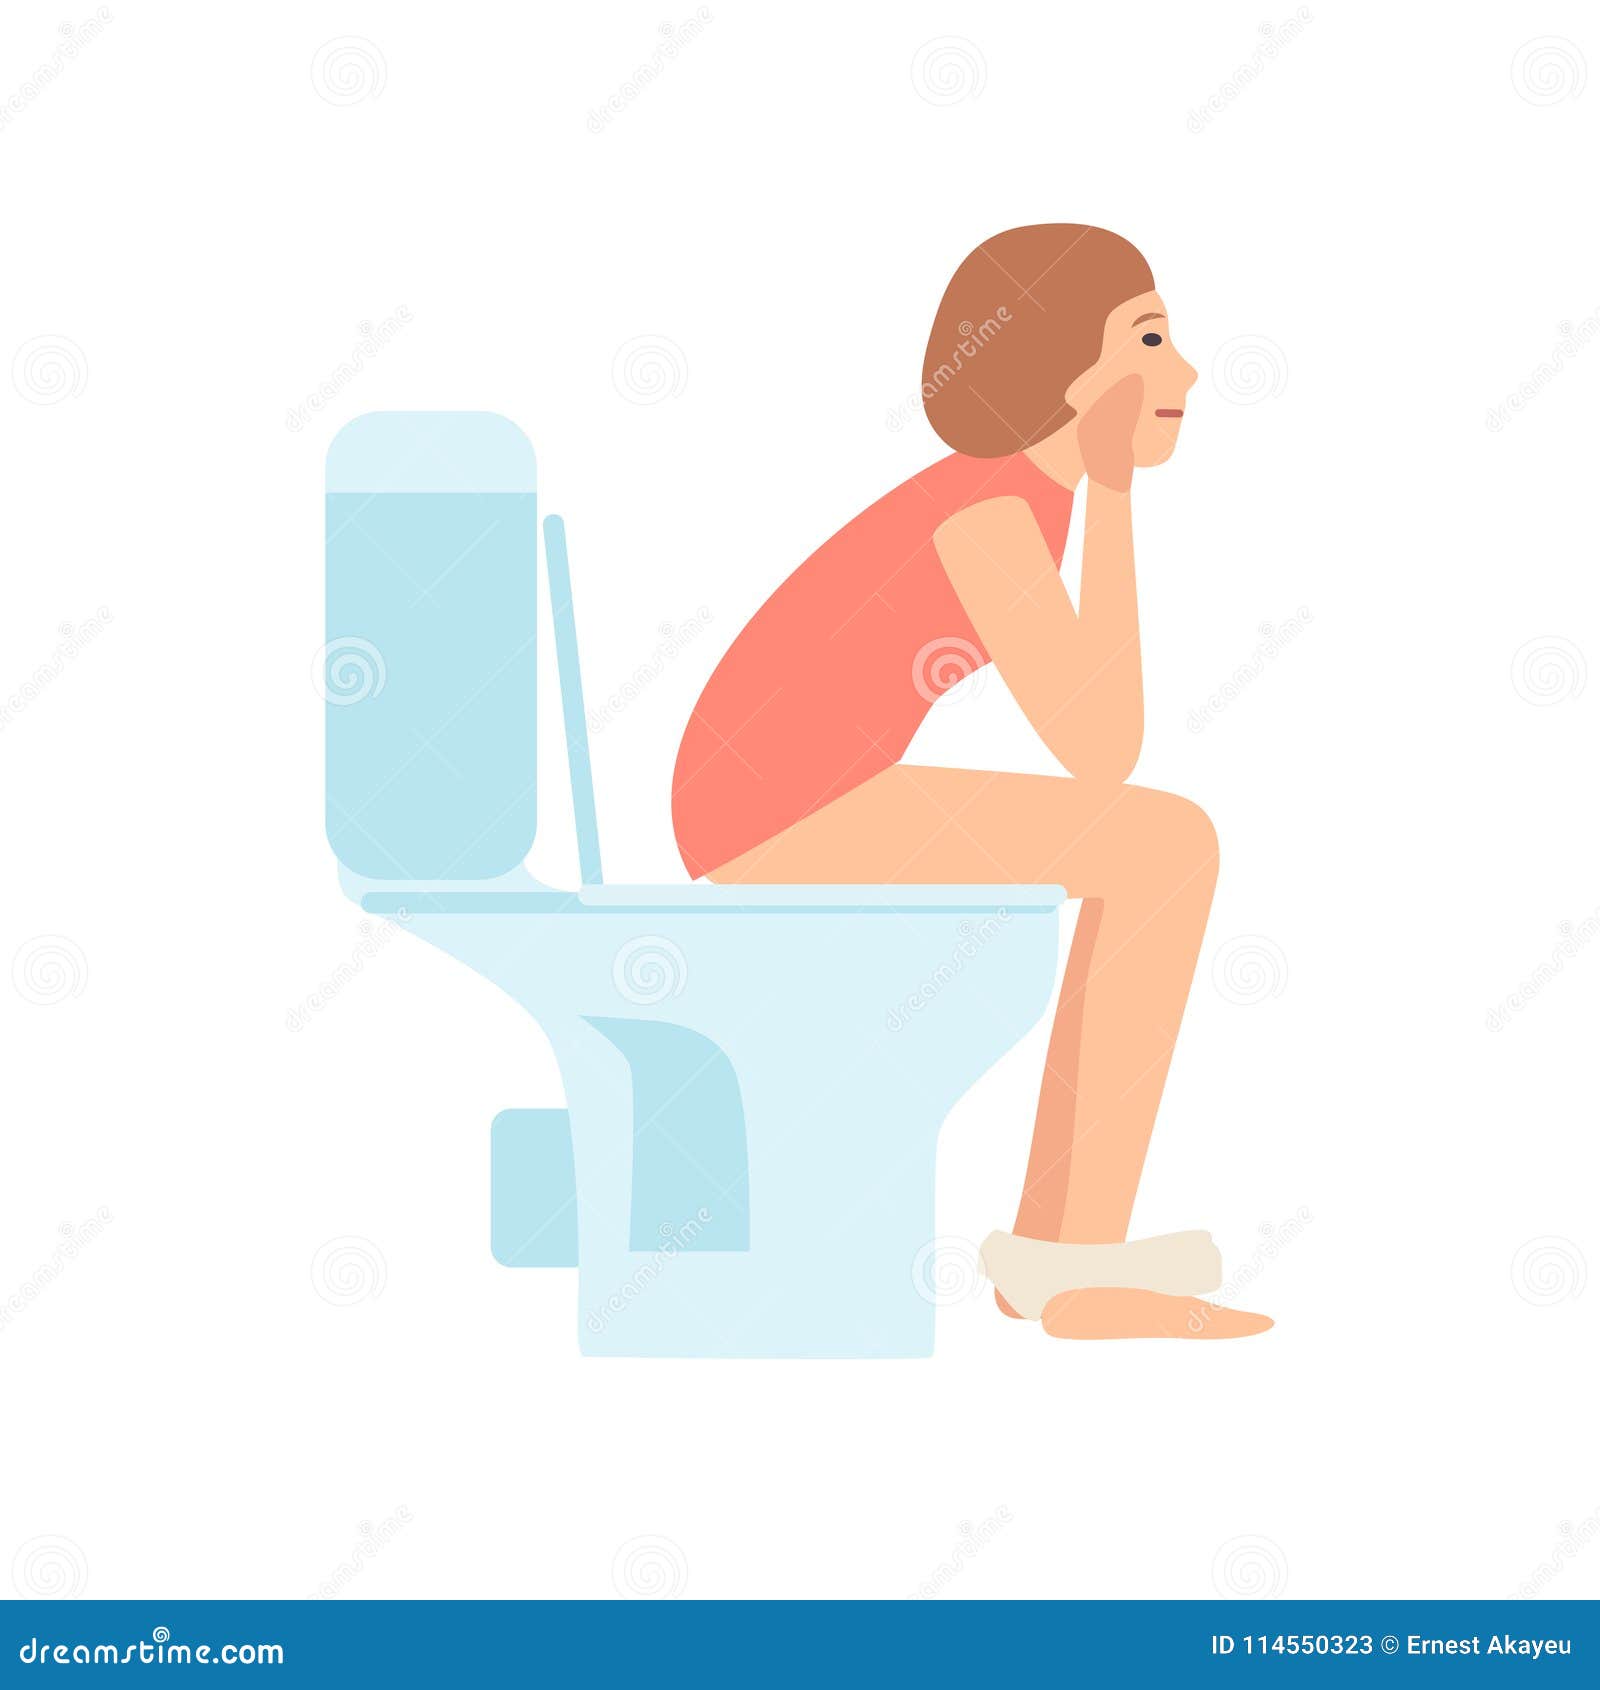 free videos of women pooping